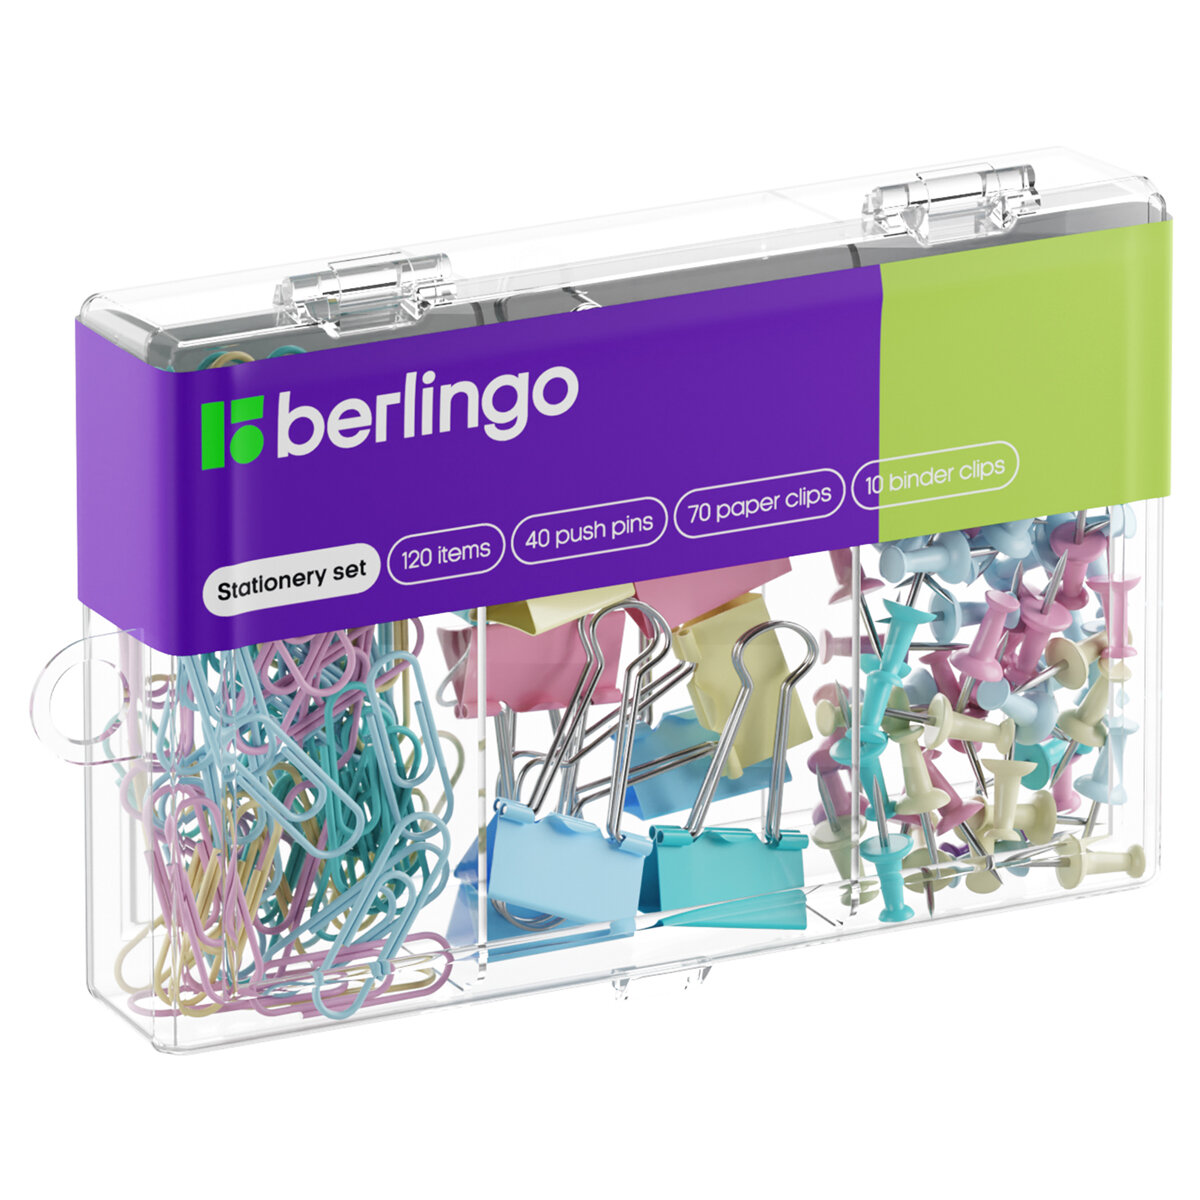 Набор мелкоофисных принадлежностей Berlingo, 120 предметов, ассорти пастель, пластиковая упаковка, 12 шт. в упаковке